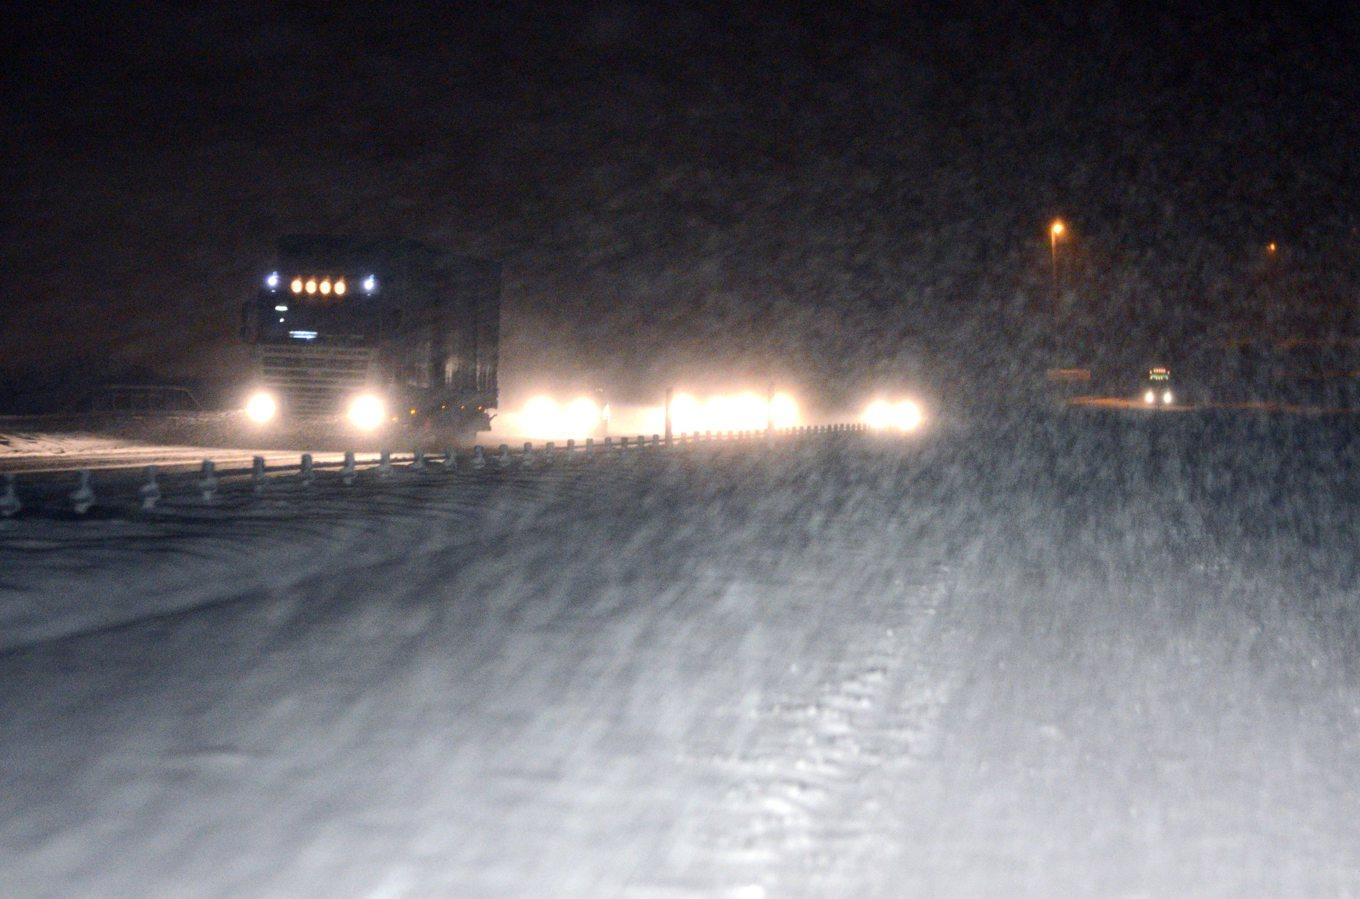 Det hårda vädret har orsakat snö- och halkkaos bland annat längs Vättern. Trafikanter kan bli fast i köerna på E4 hela natten, varnar räddningstjänsten i Jönköpings kommun. Arkivbild. Foto: Johan Nilsson / TT